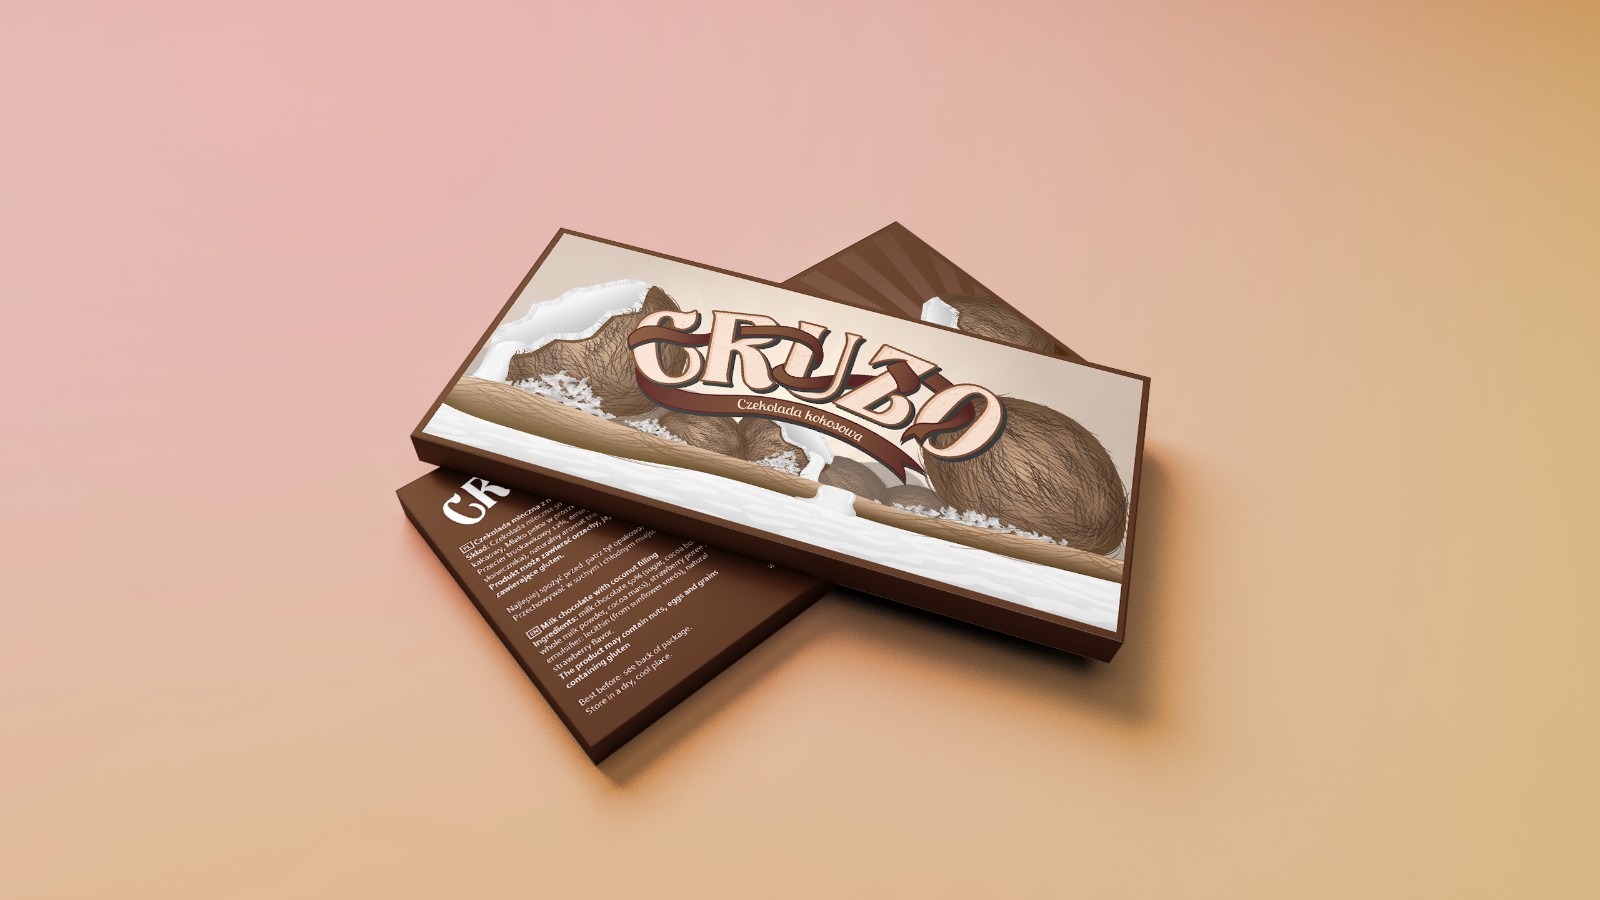 复古风的巧克力包装设计案例赏析 